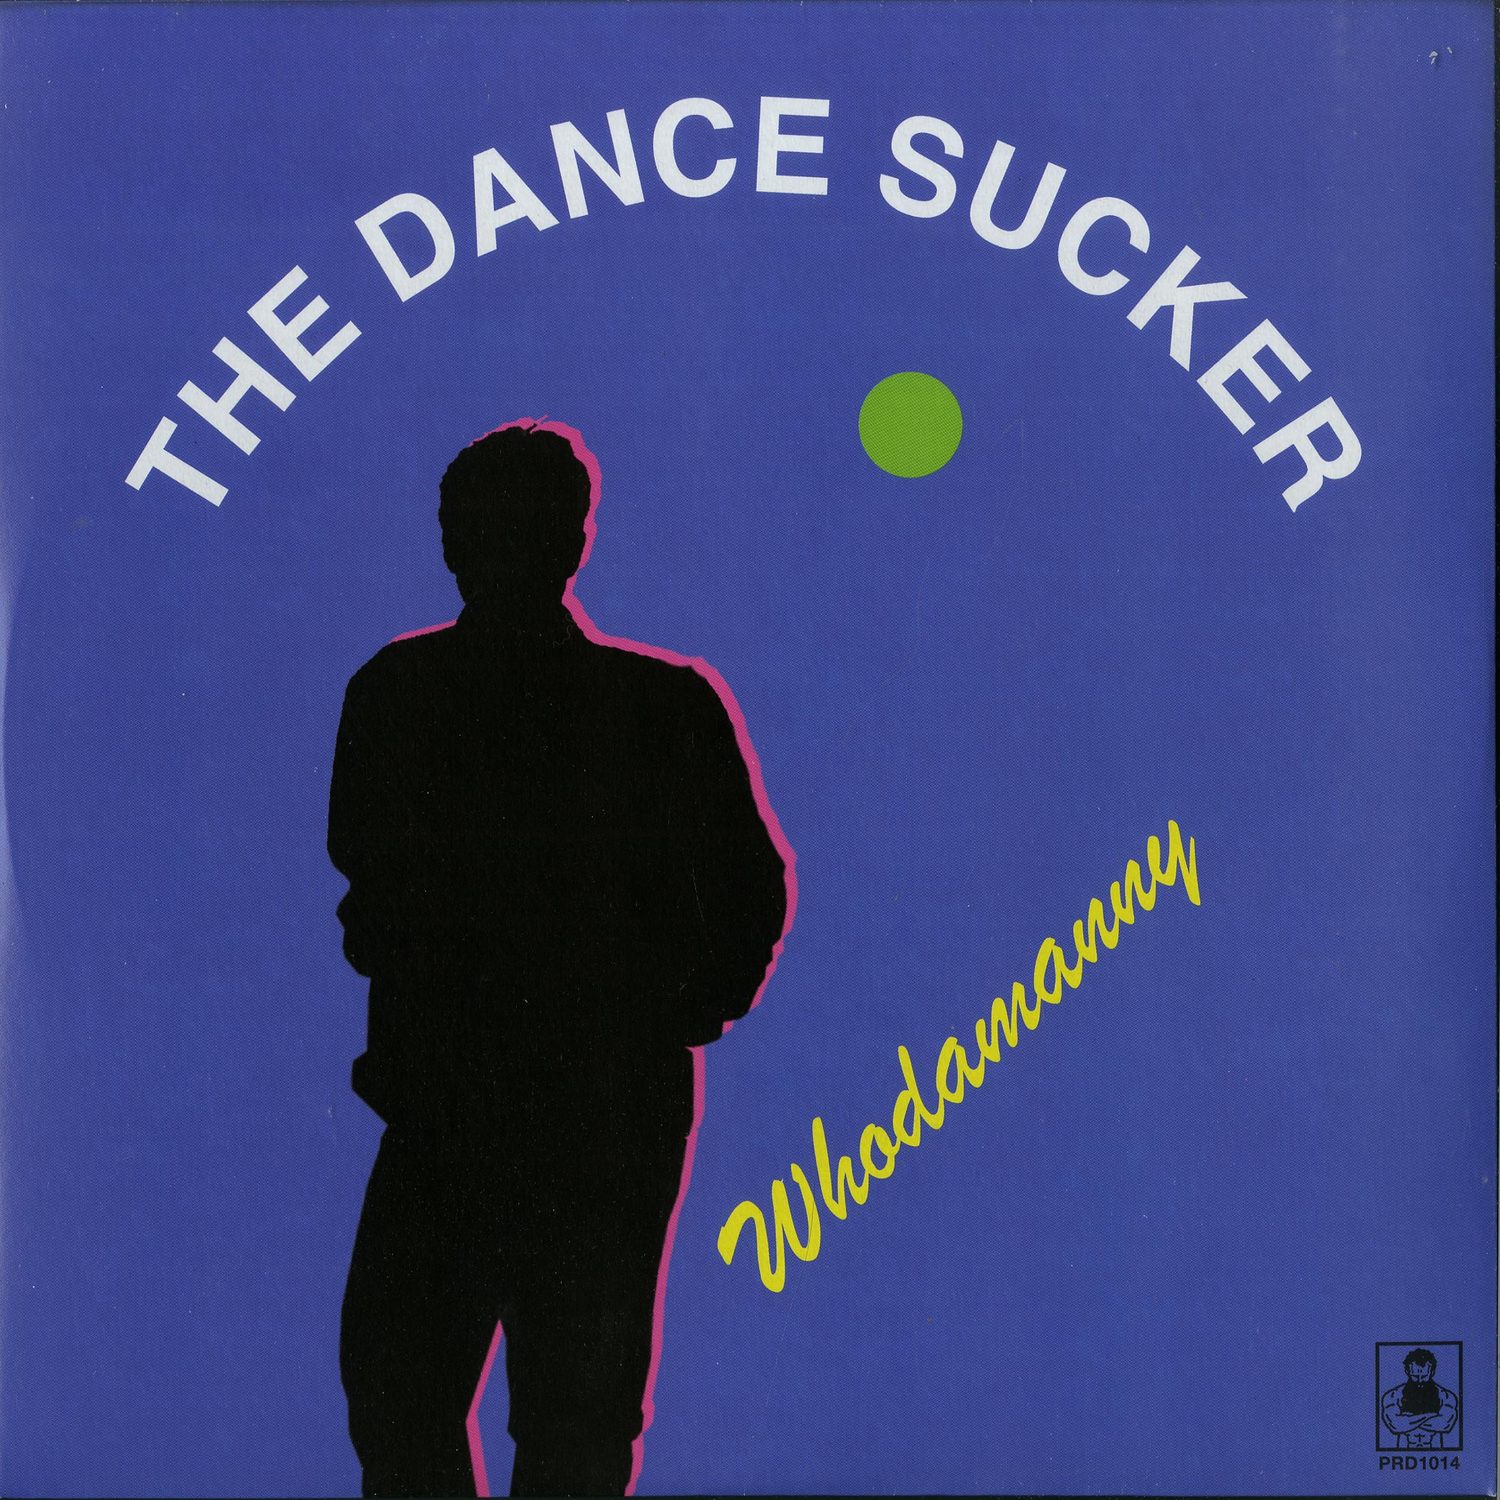 Whodamanny - THE DANCE SUCKER